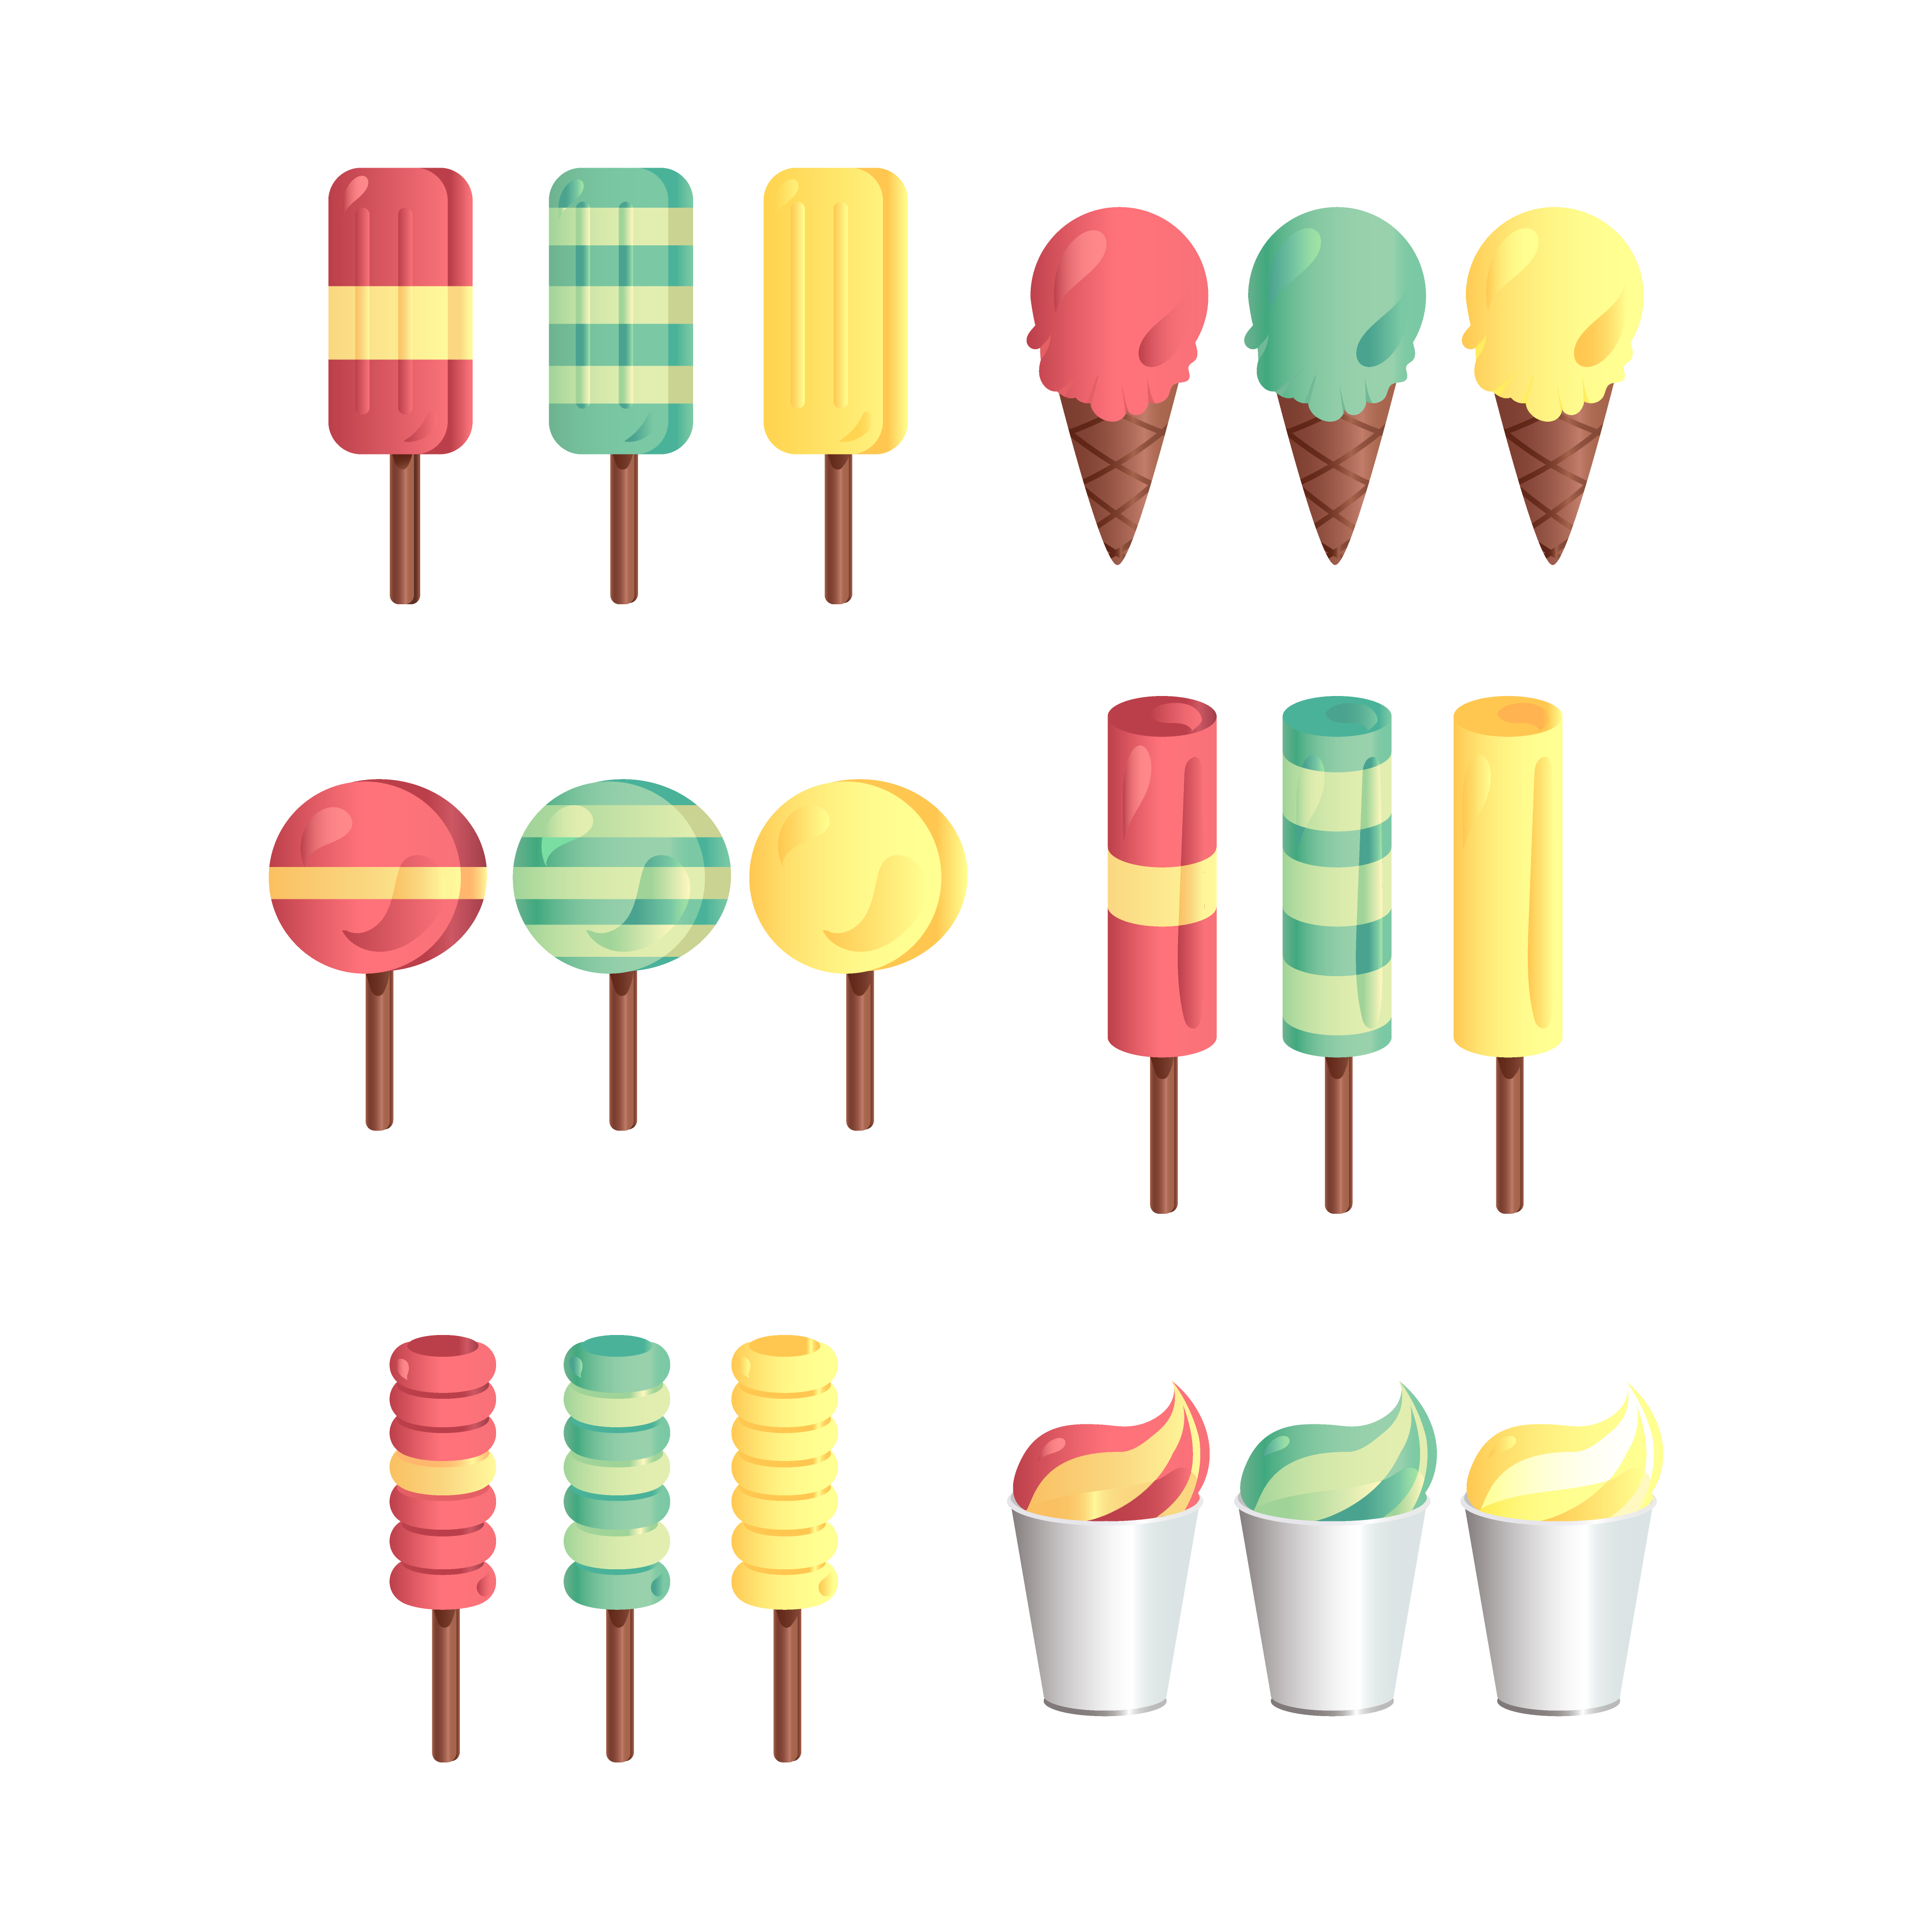 Мороженое разные цвета задание. Мороженое шаблон для английского по теме цвета. Ice Cream 3 Color. Flat icing